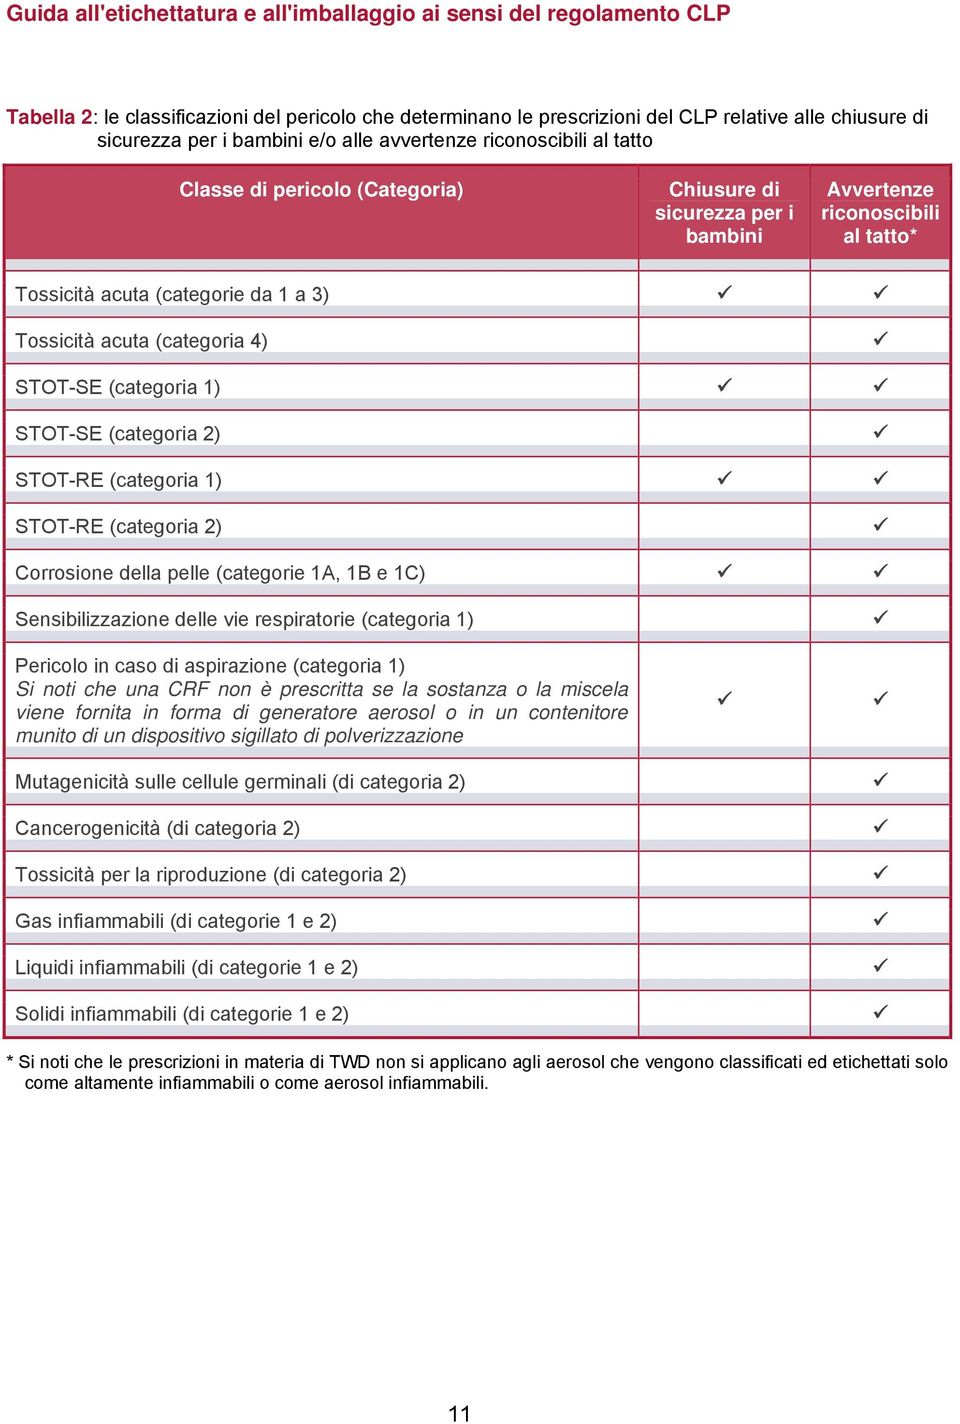 STOT-RE (categoria 1) STOT-RE (categoria 2) Corrosione della pelle (categorie 1A, 1B e 1C) Sensibilizzazione delle vie respiratorie (categoria 1) Pericolo in caso di aspirazione (categoria 1) Si noti